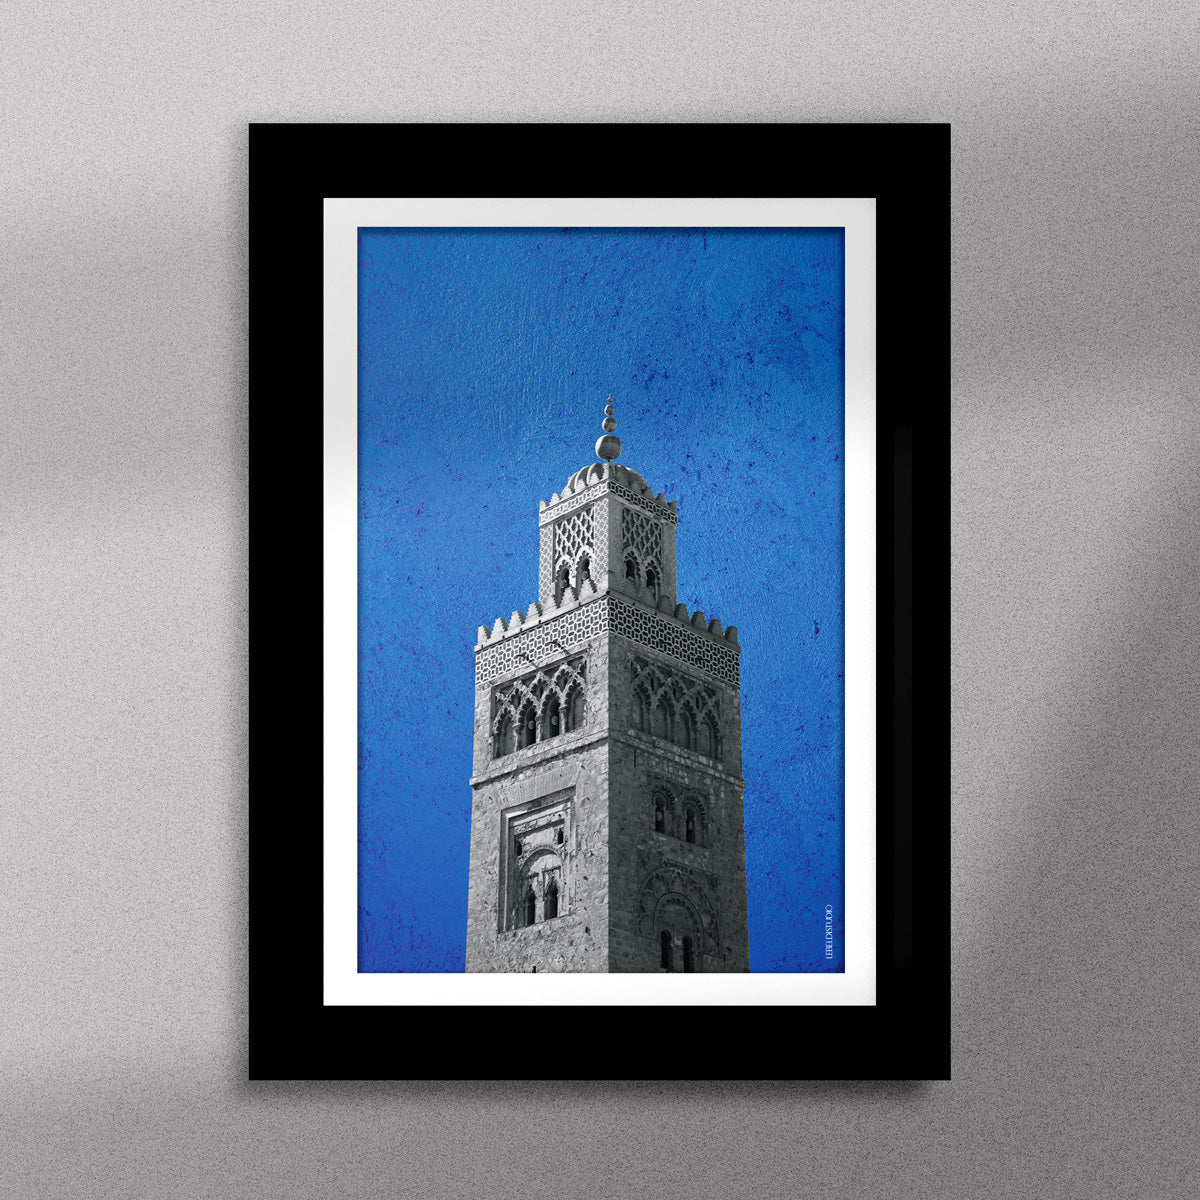 Tableau décoratif représentant la Koutoubia de Marrakech sur un fond bleu, encadré dans un cadre noir - Format A5.